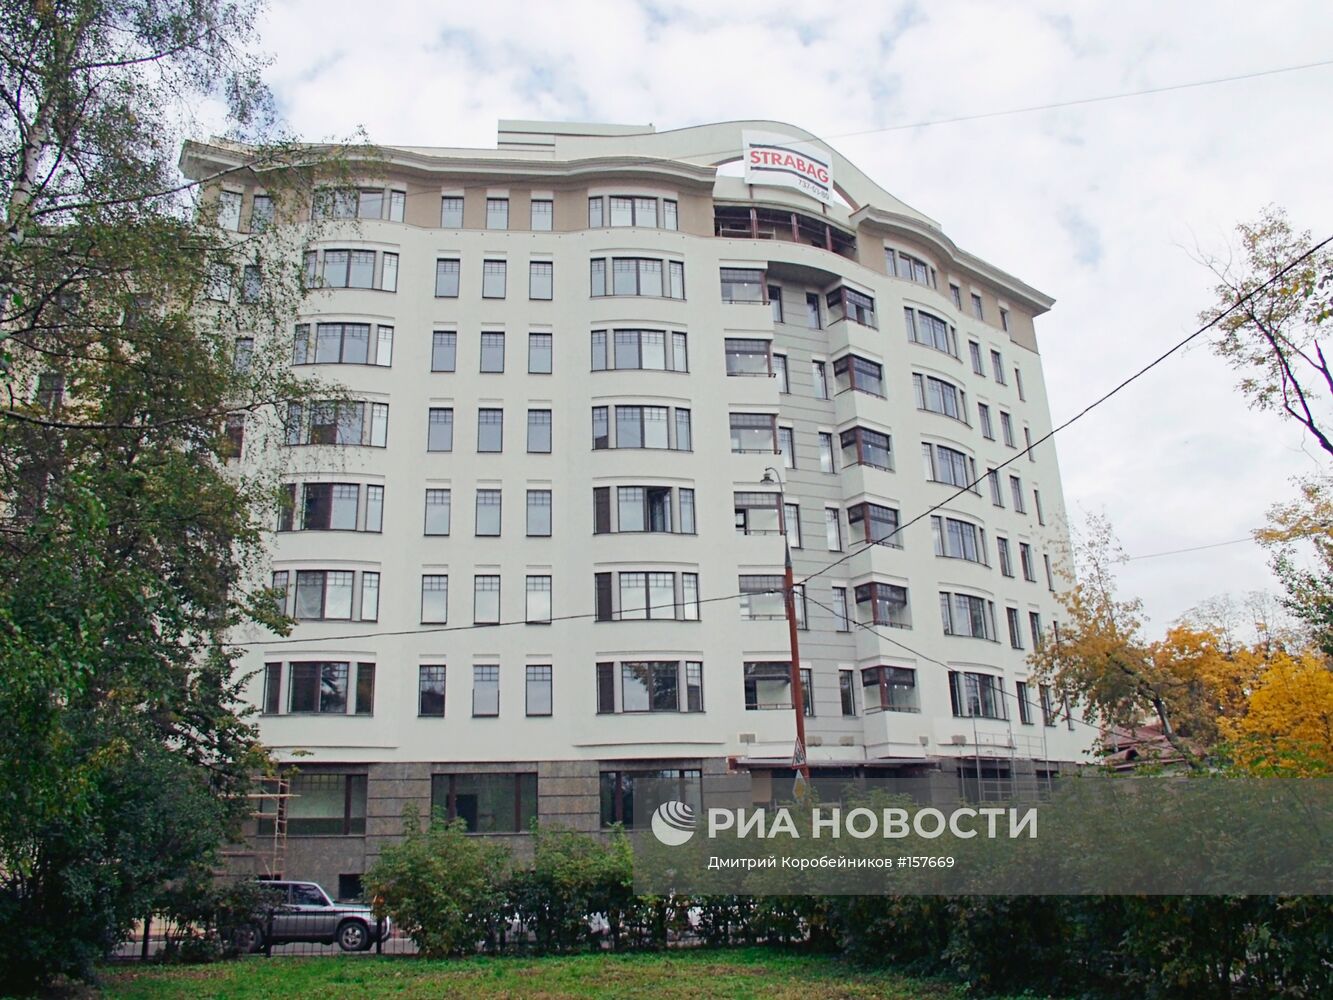 Жилой дом на Плющихе в Москве